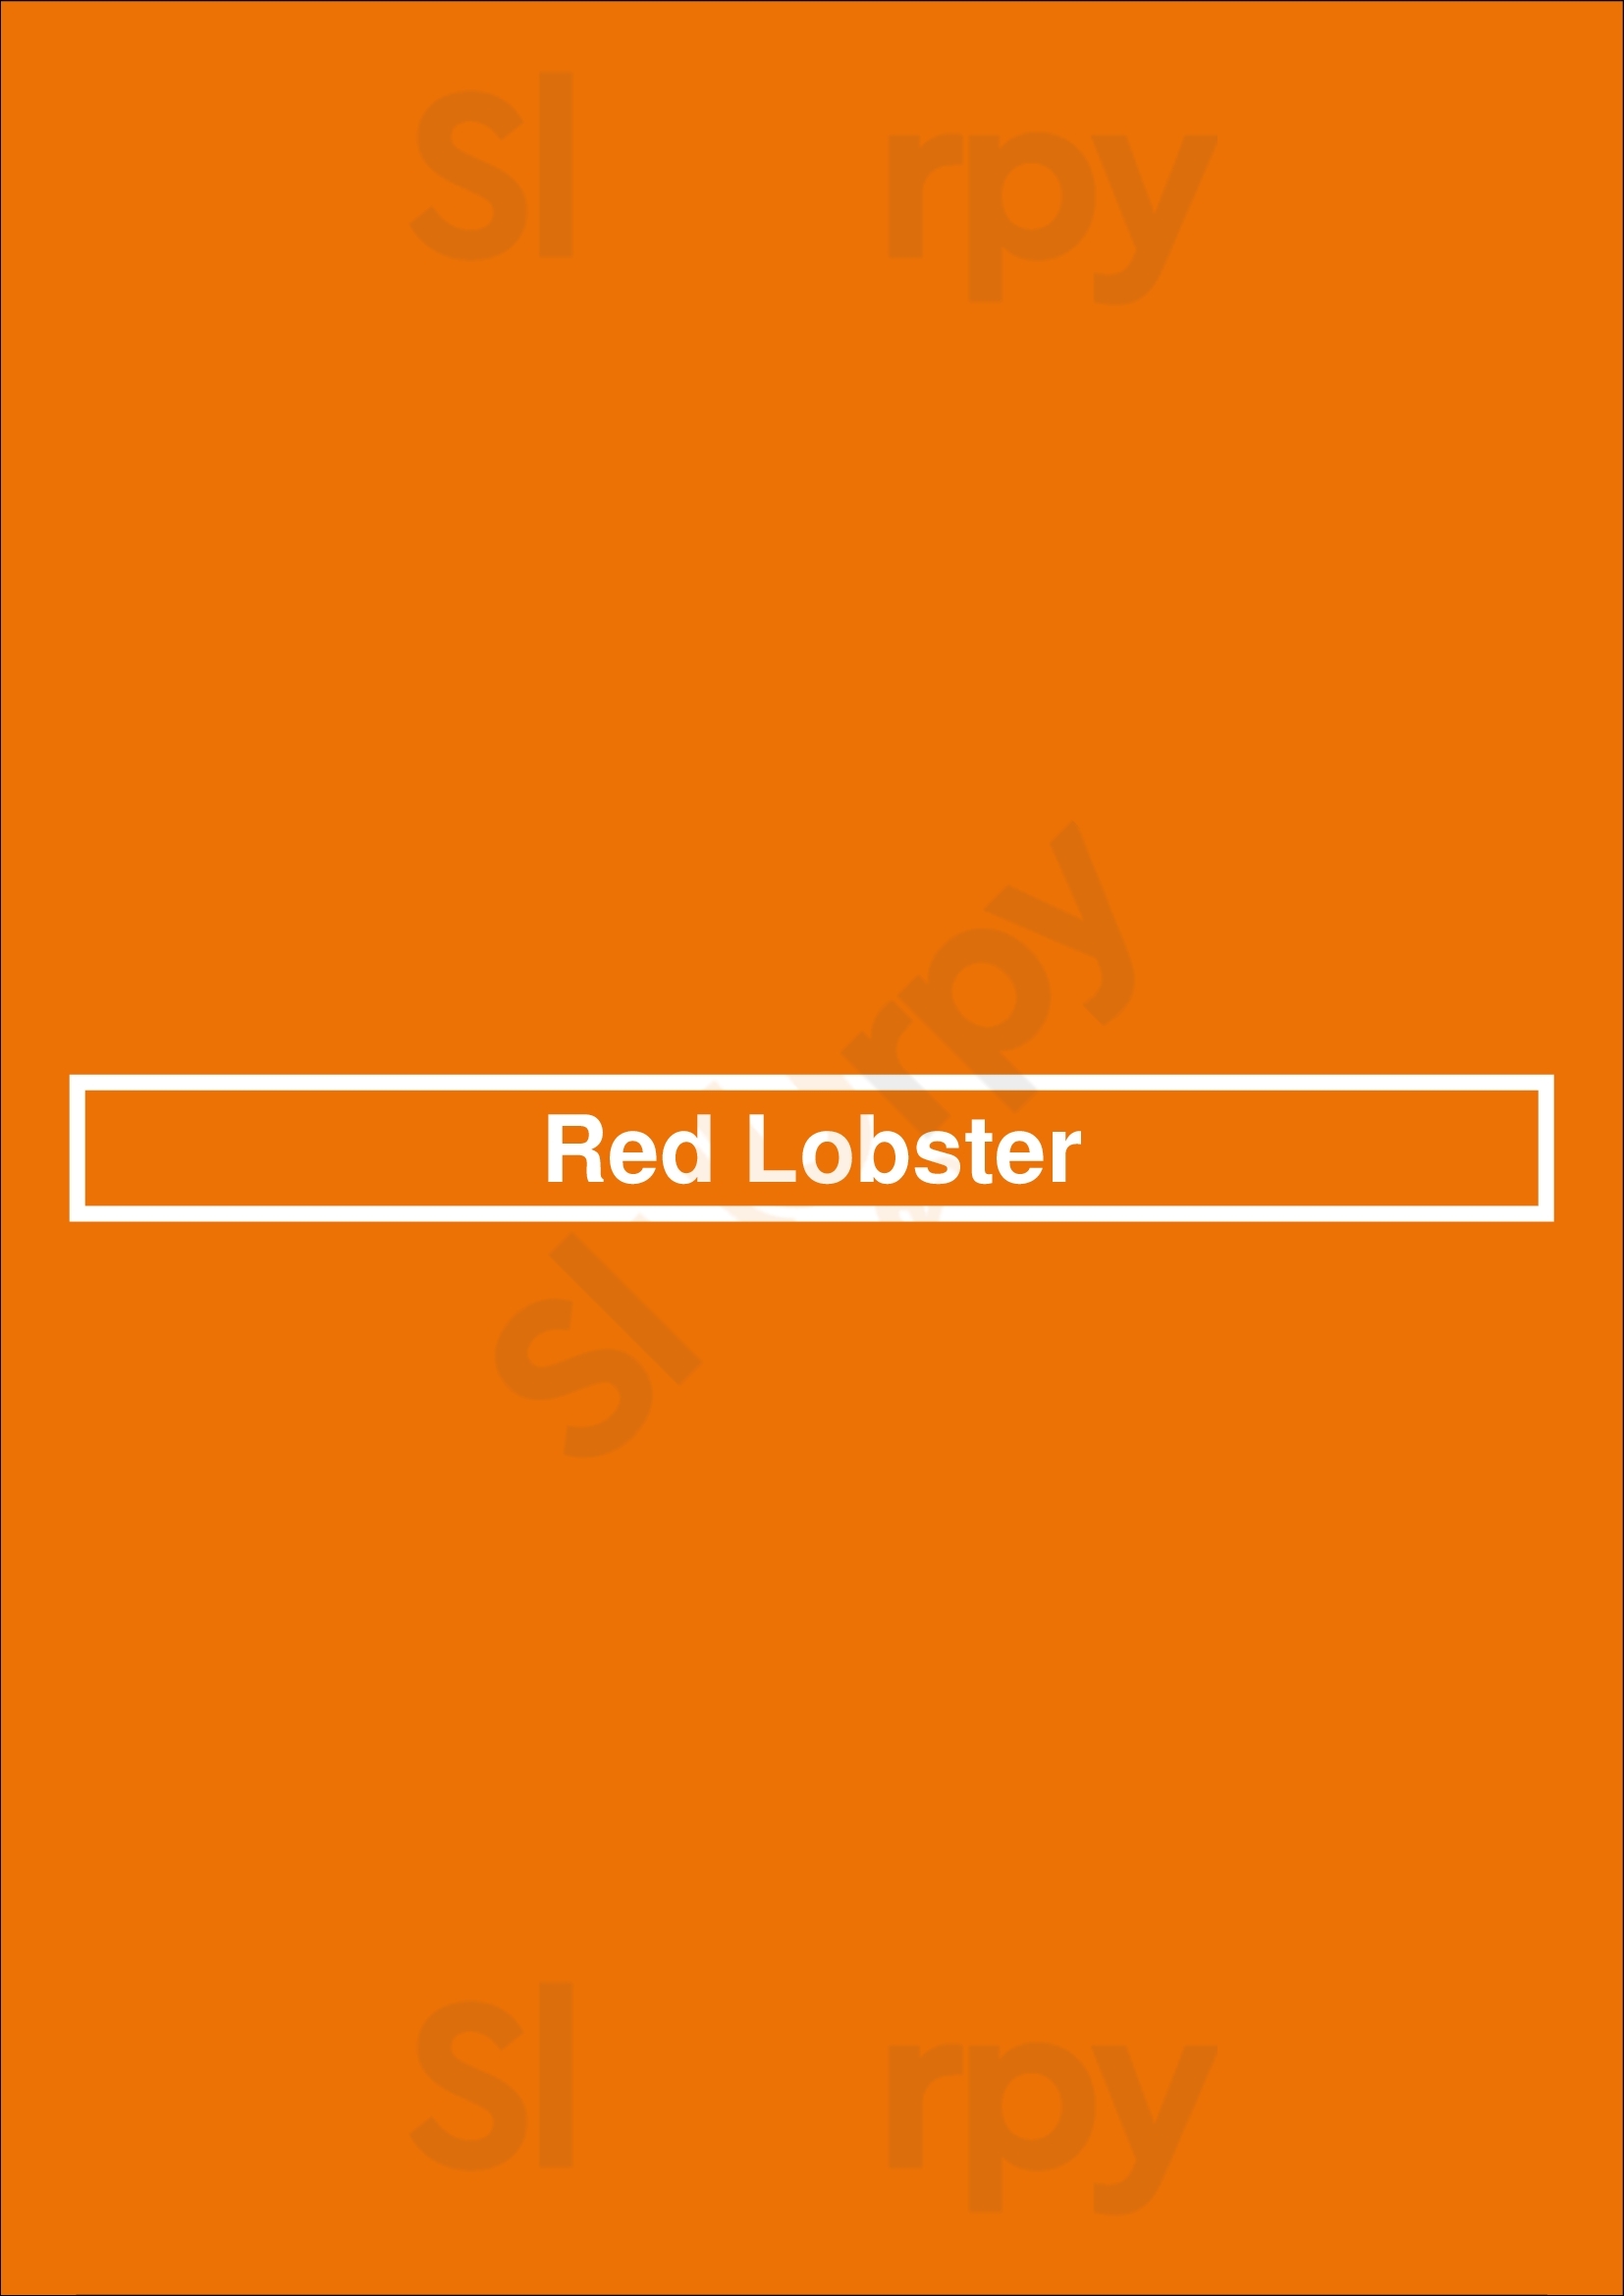 Red Lobster Ottawa Menu - 1